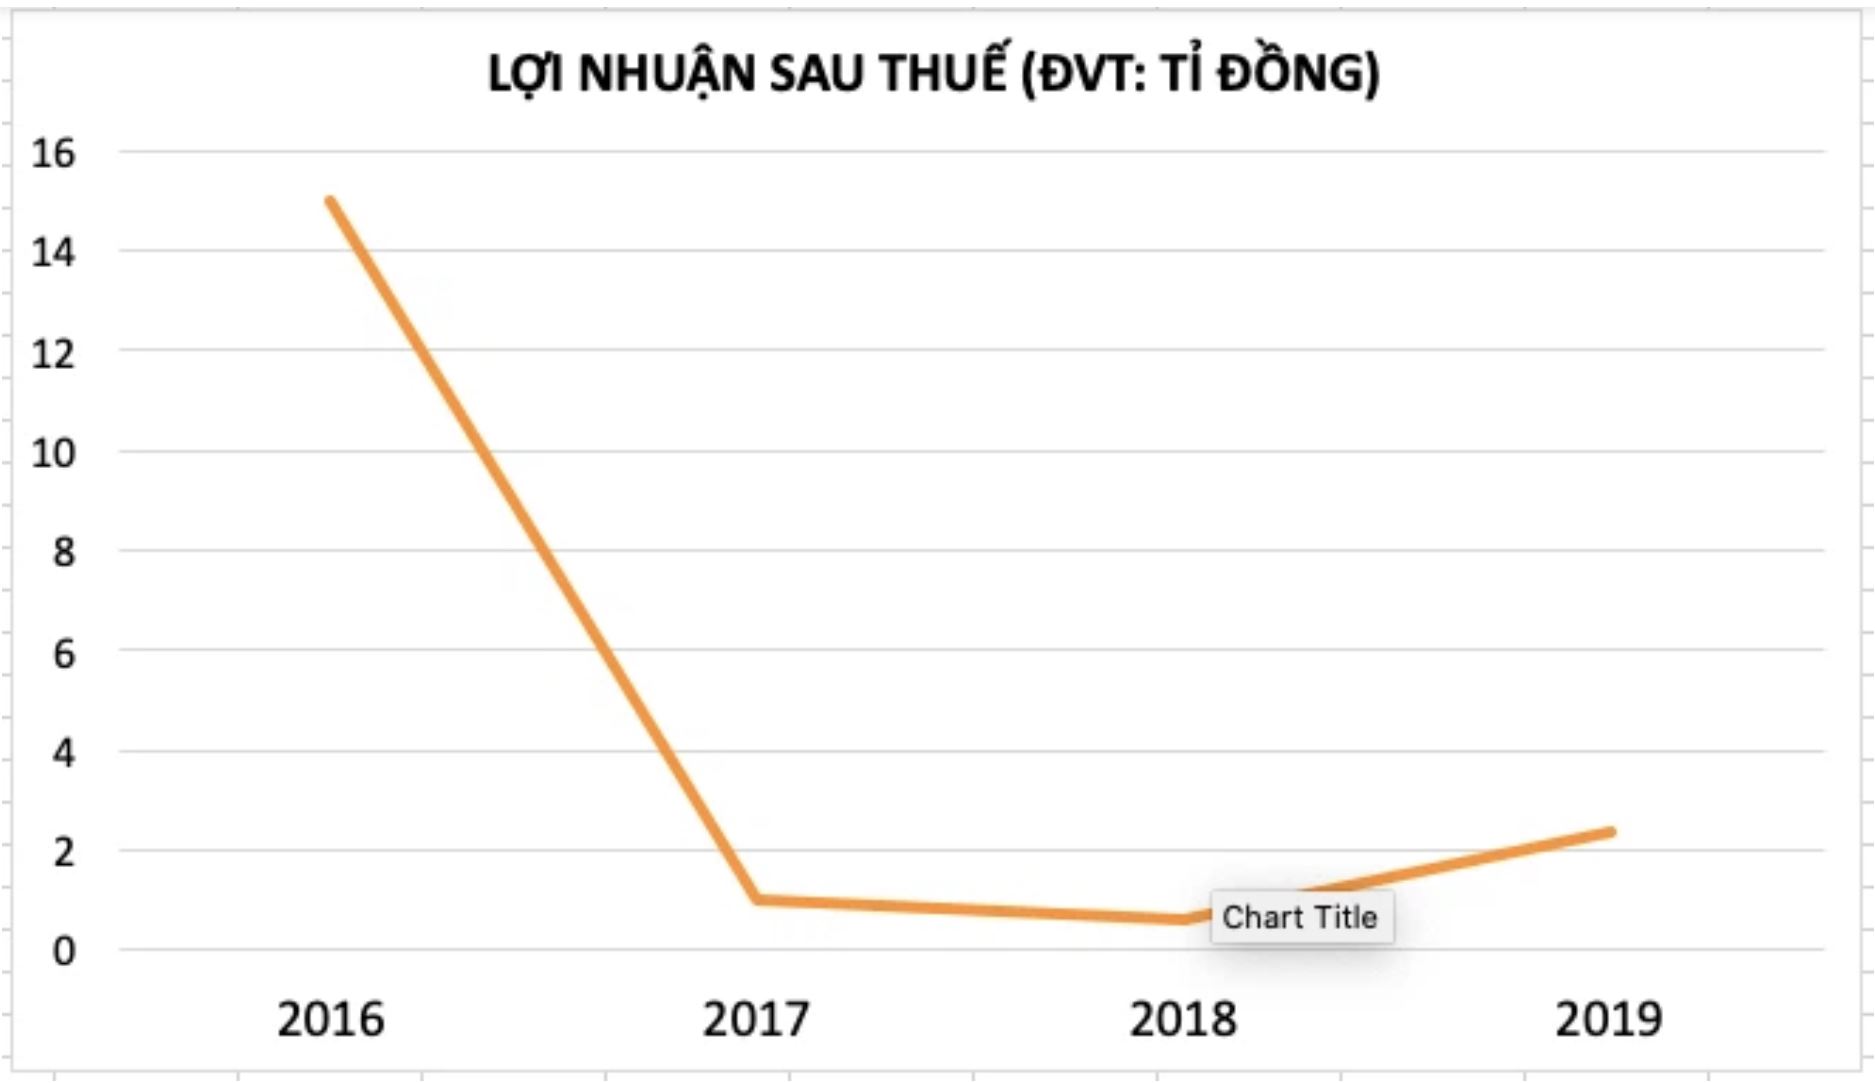 Ai đứng đầu thị trường fitness ở Việt Nam?